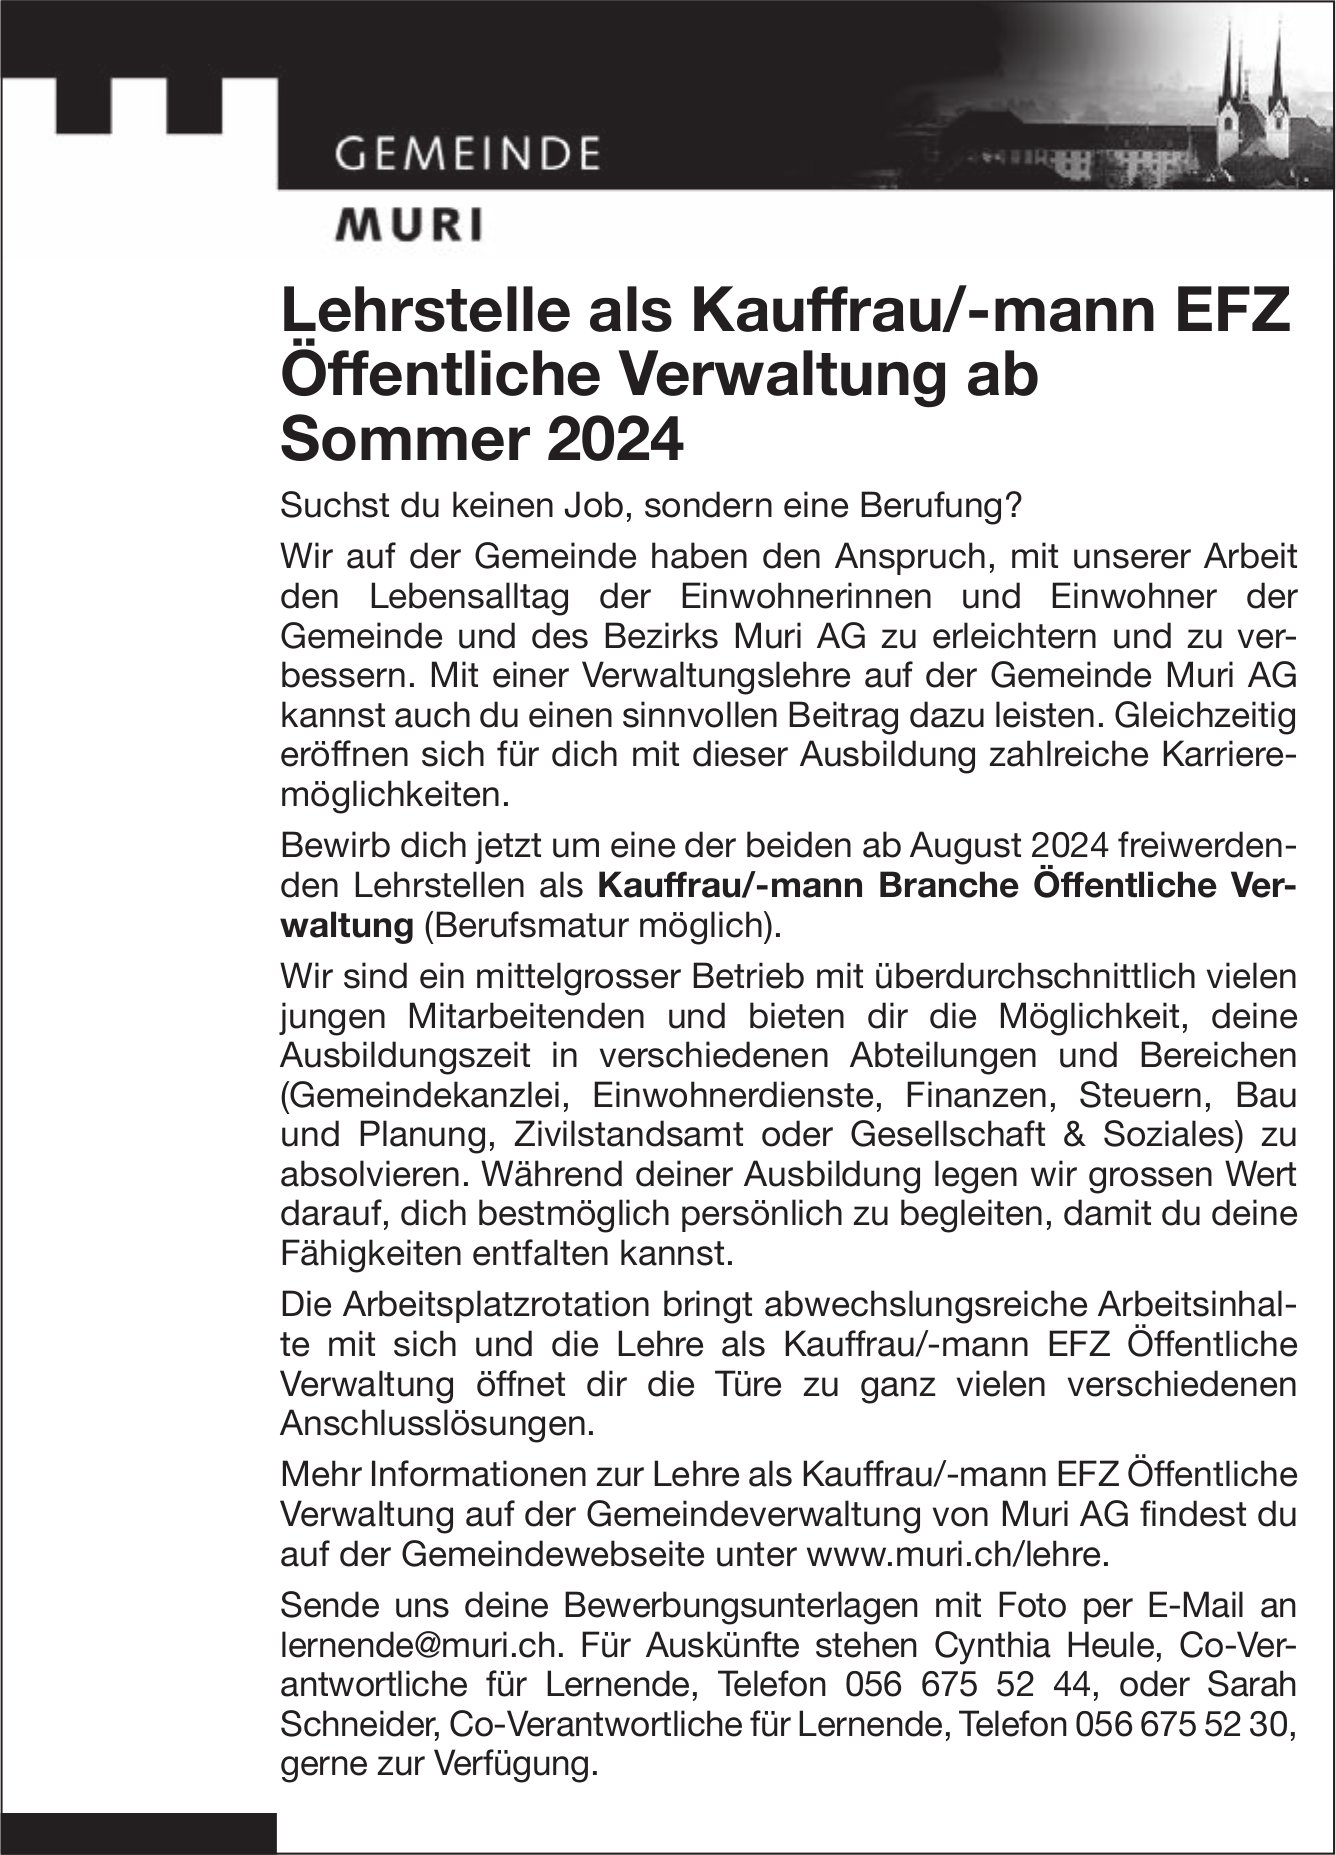 Lehrstelle als Kauffrau/-mann EFZ Öffentliche Verwaltung, Gemeinde, Muri, zu vergeben